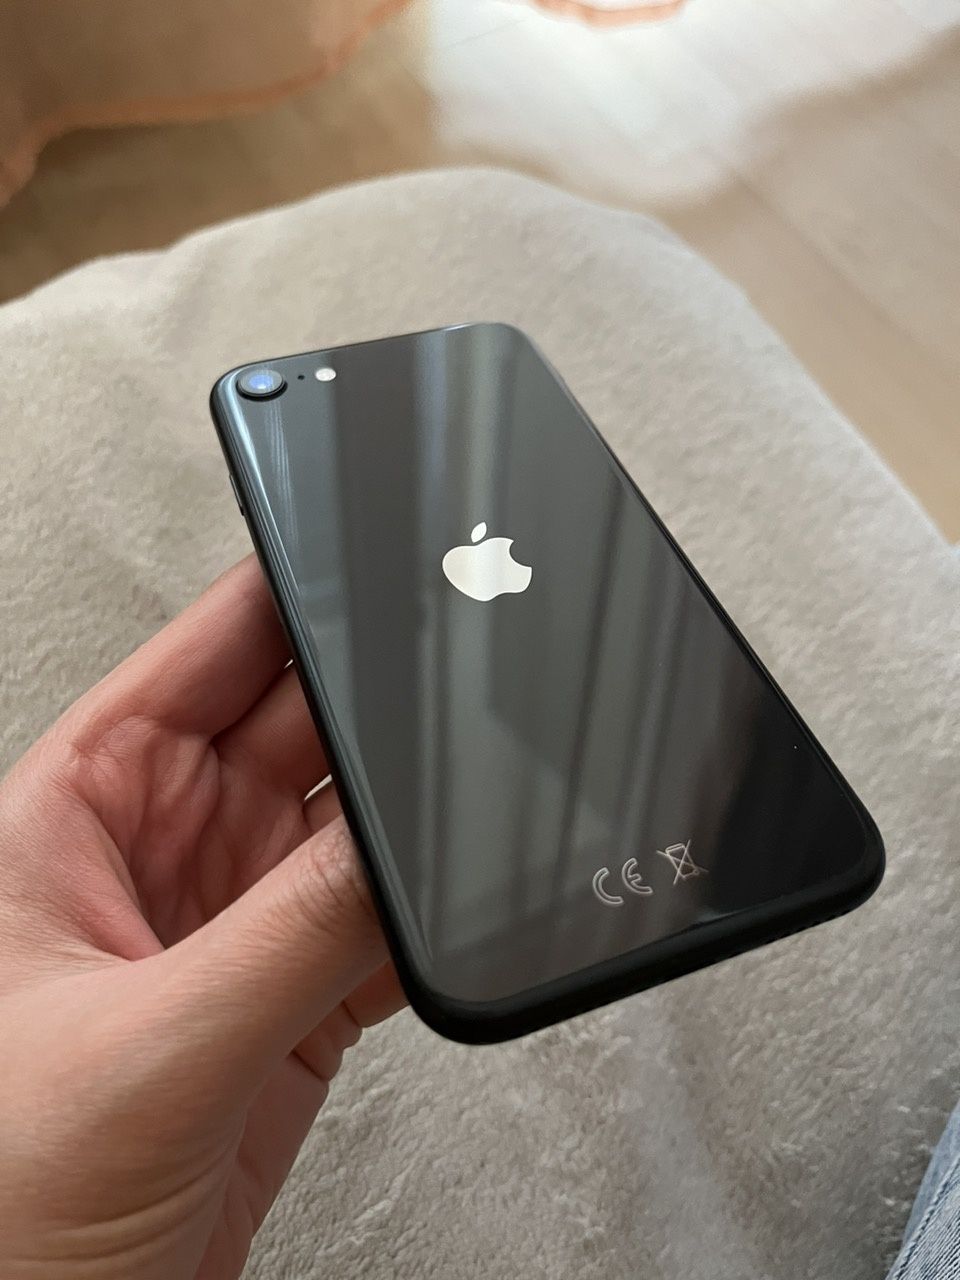 iPhone SE 2020
64 GB